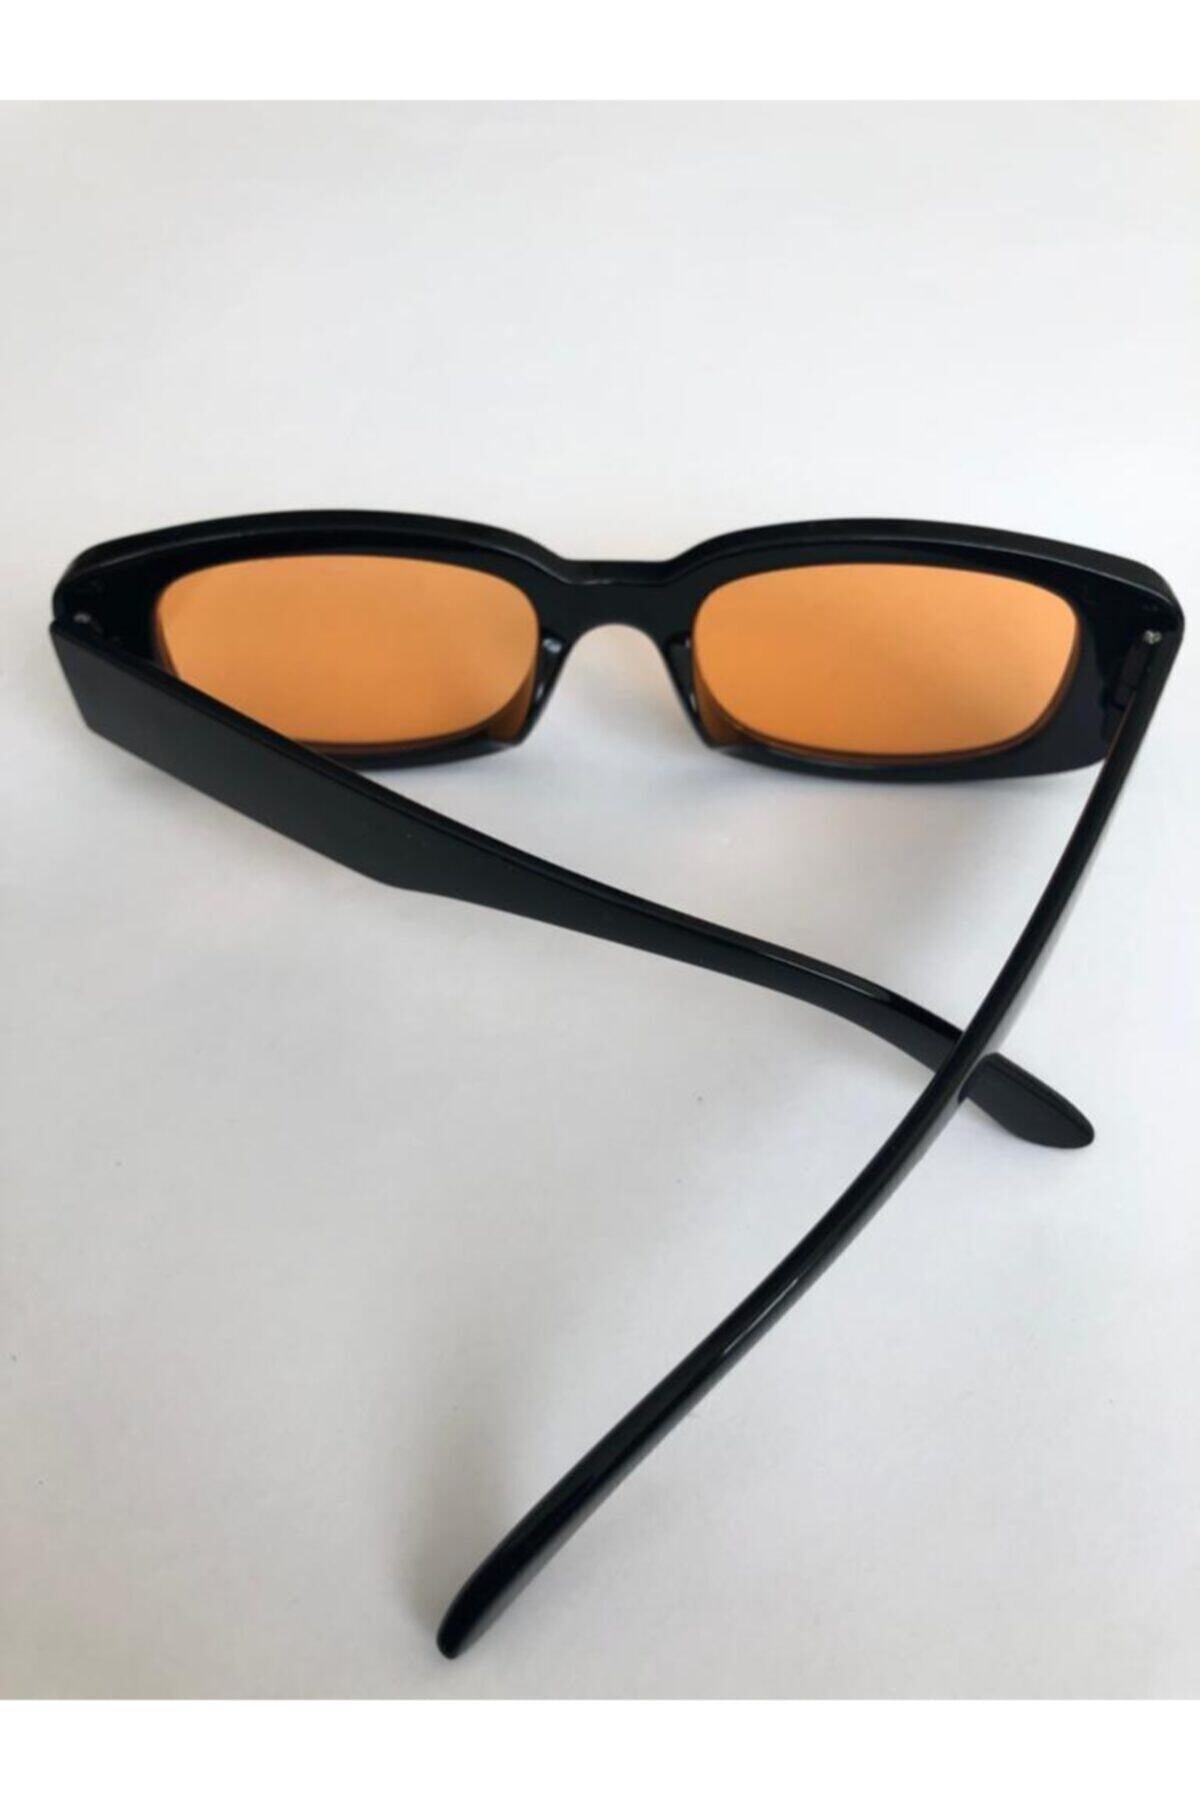 Unisex Orange Black Square Rectangle Vintage Retro Sunglasses